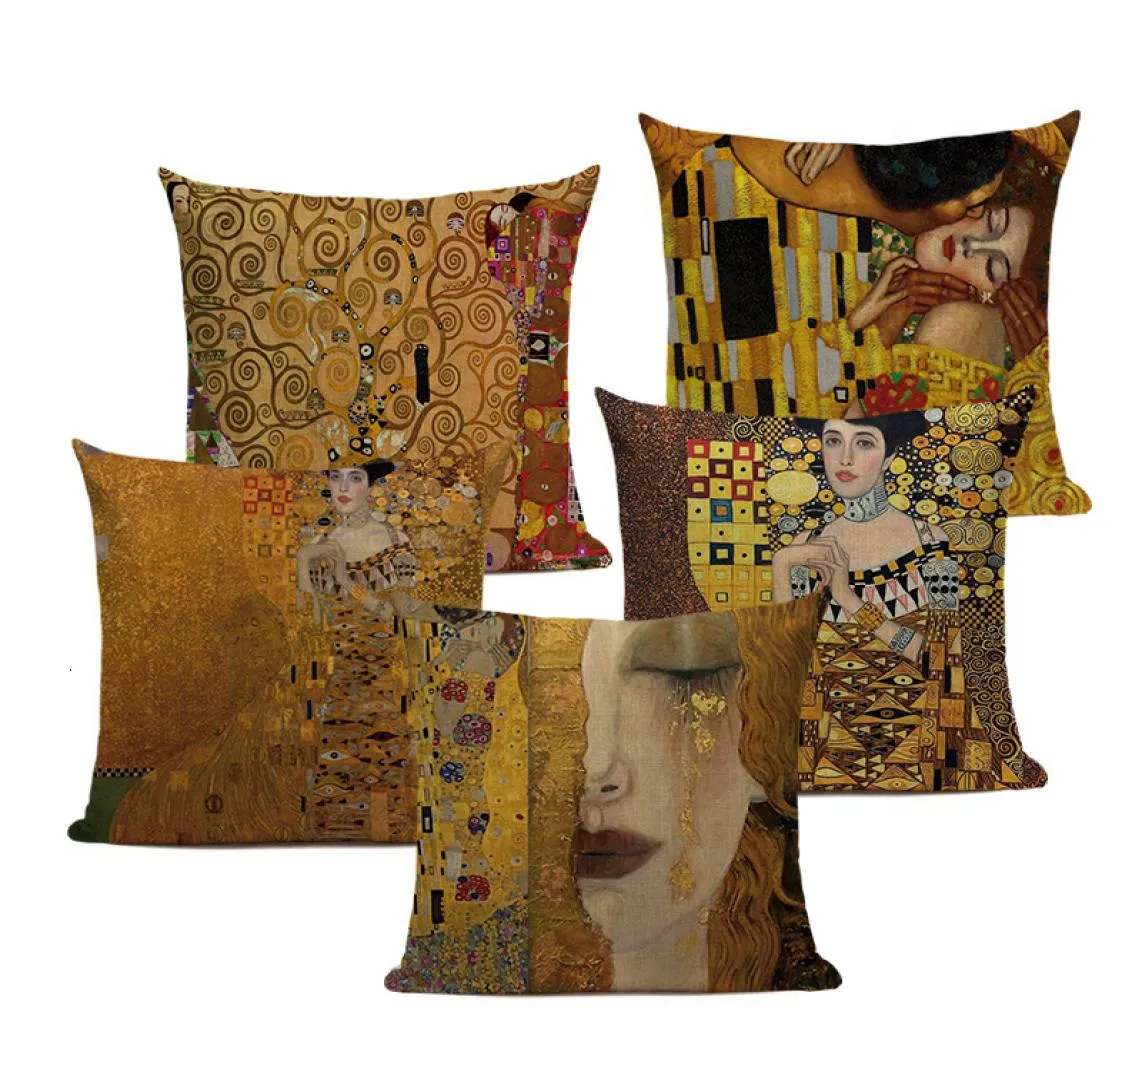 Coup d'oreiller rétro Abstract Throw Gustav Klimt Empress Cushion couvre les peintures d'huile coussins DÉCORATIFS SOFA OLLOWS CASE KISSEN2281877